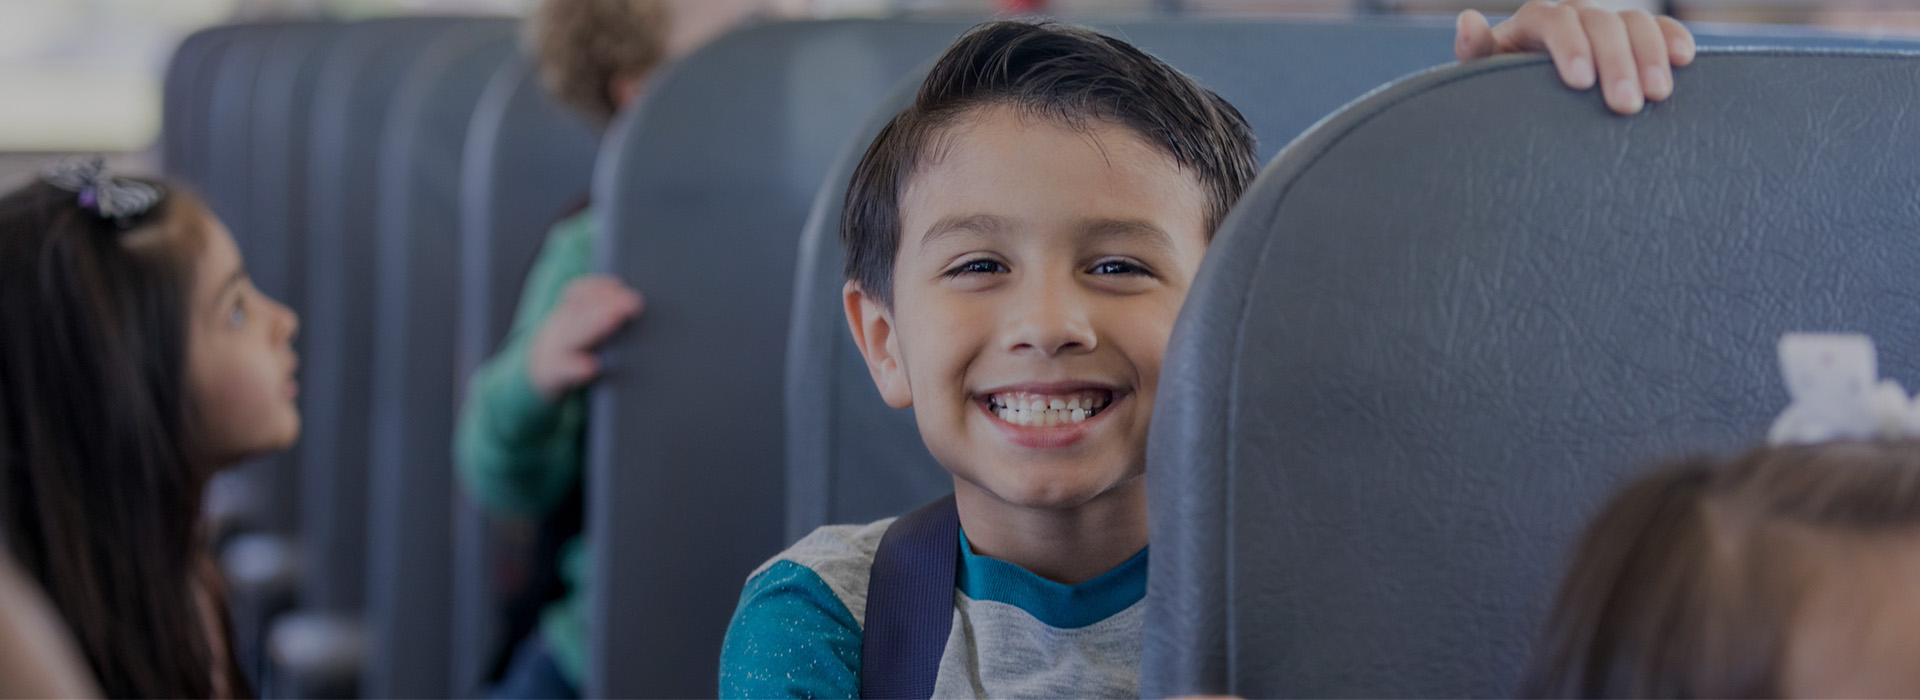 Slajd 3 - uśmiechnięty chłopiec w autobusie